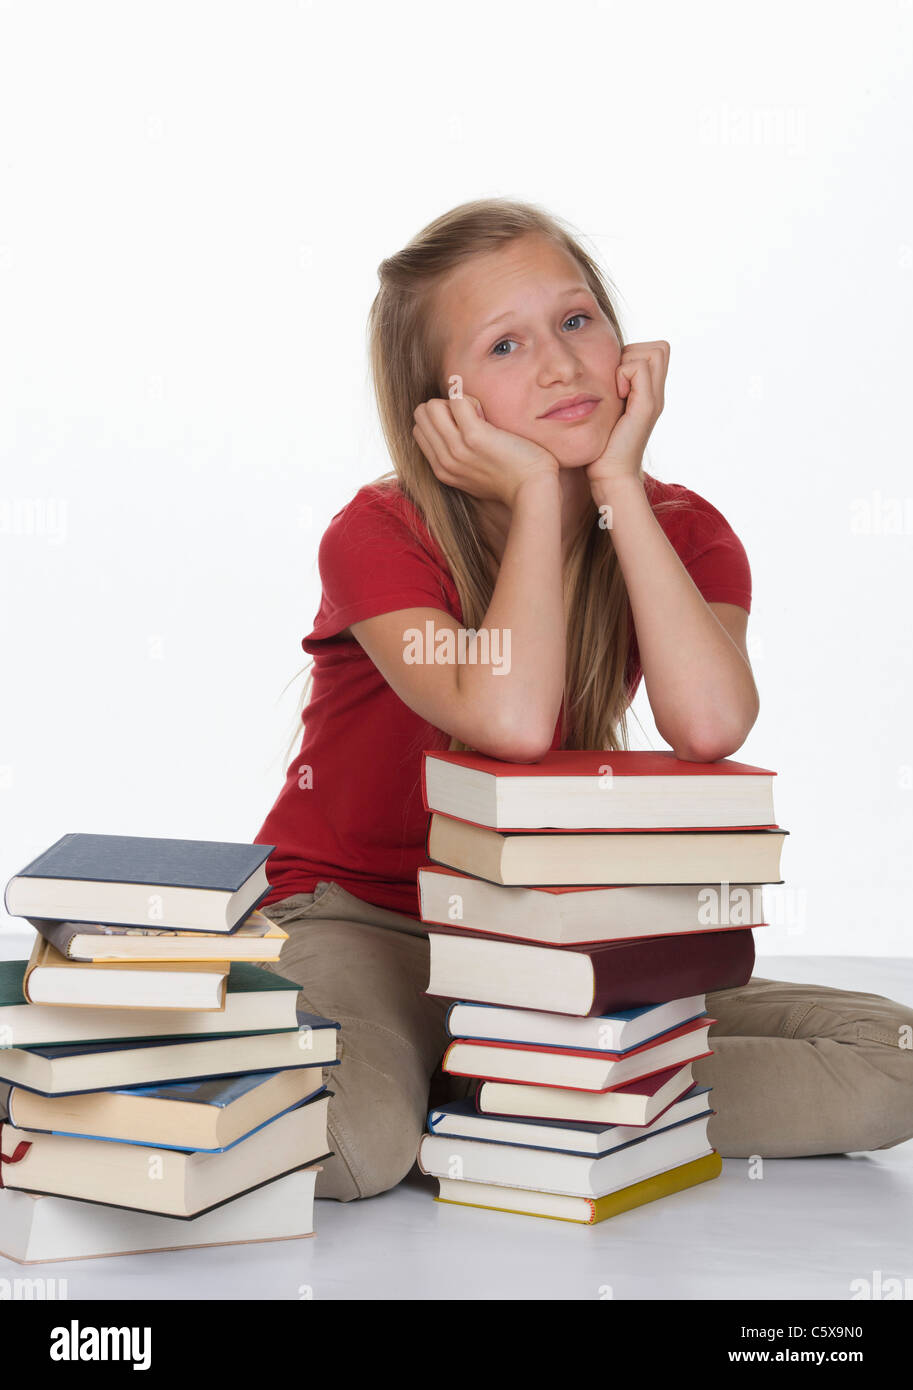 Fille assise à côté pile de livres contre fond blanc Banque D'Images